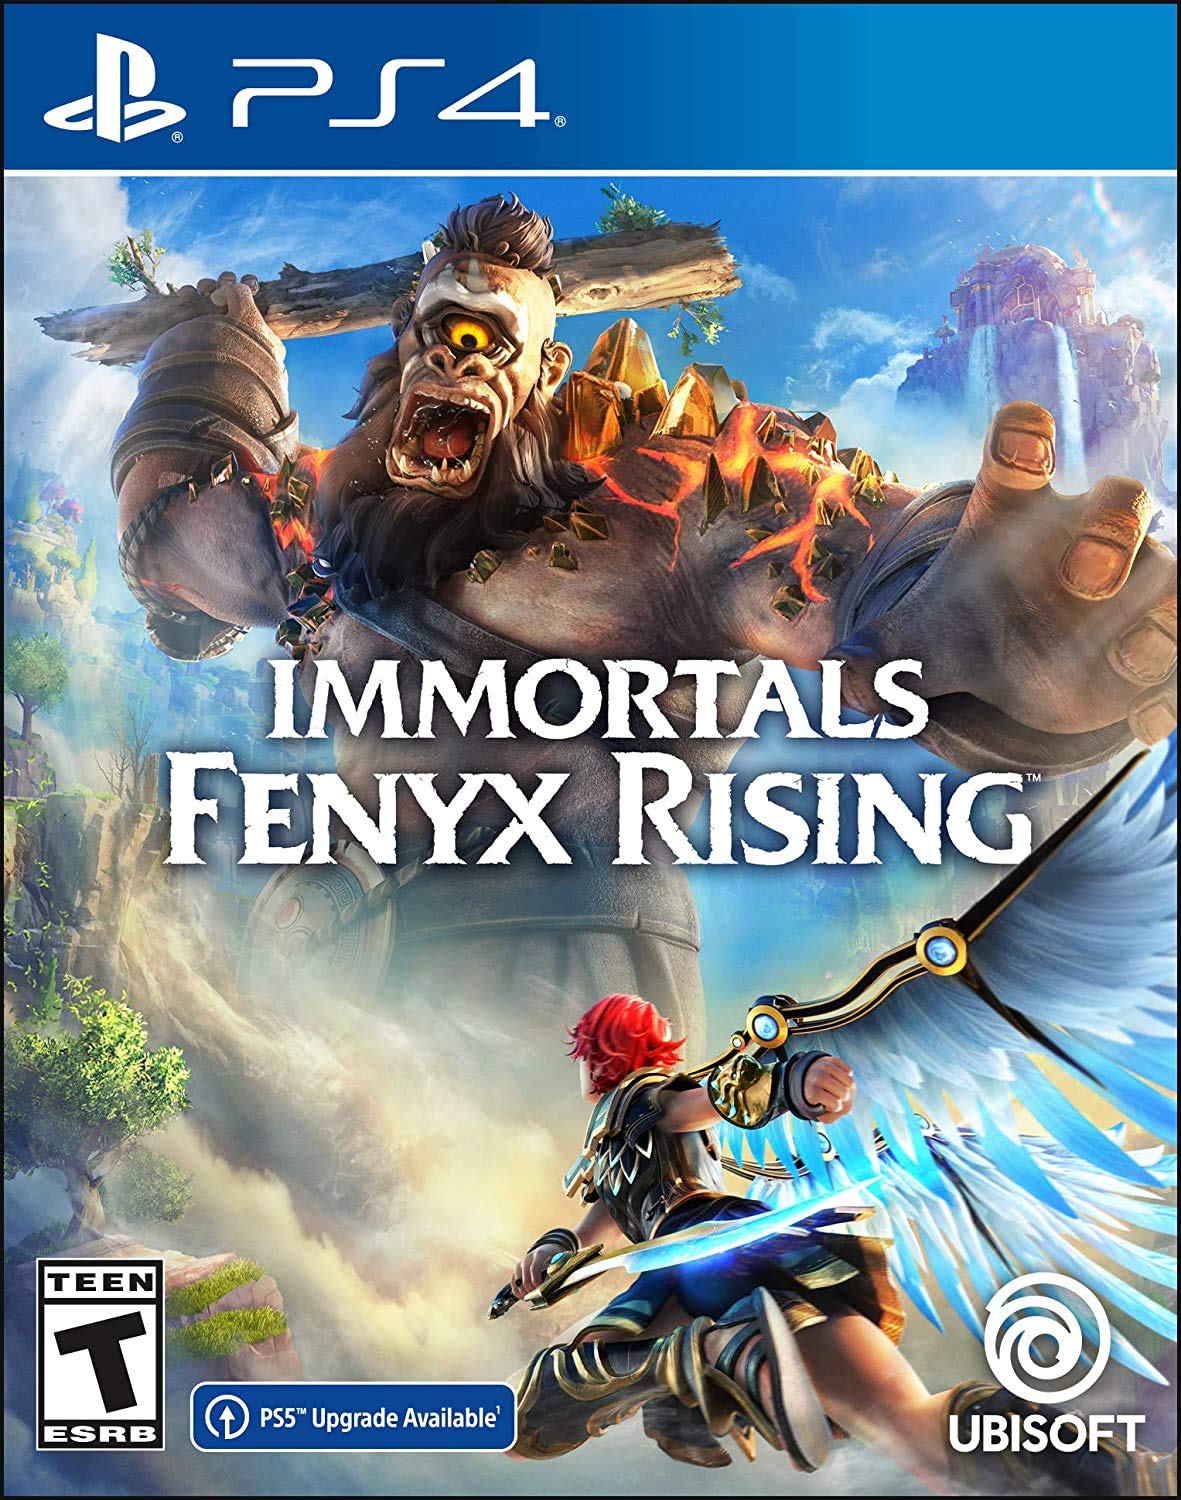 Immortals fenyx rising - ps4